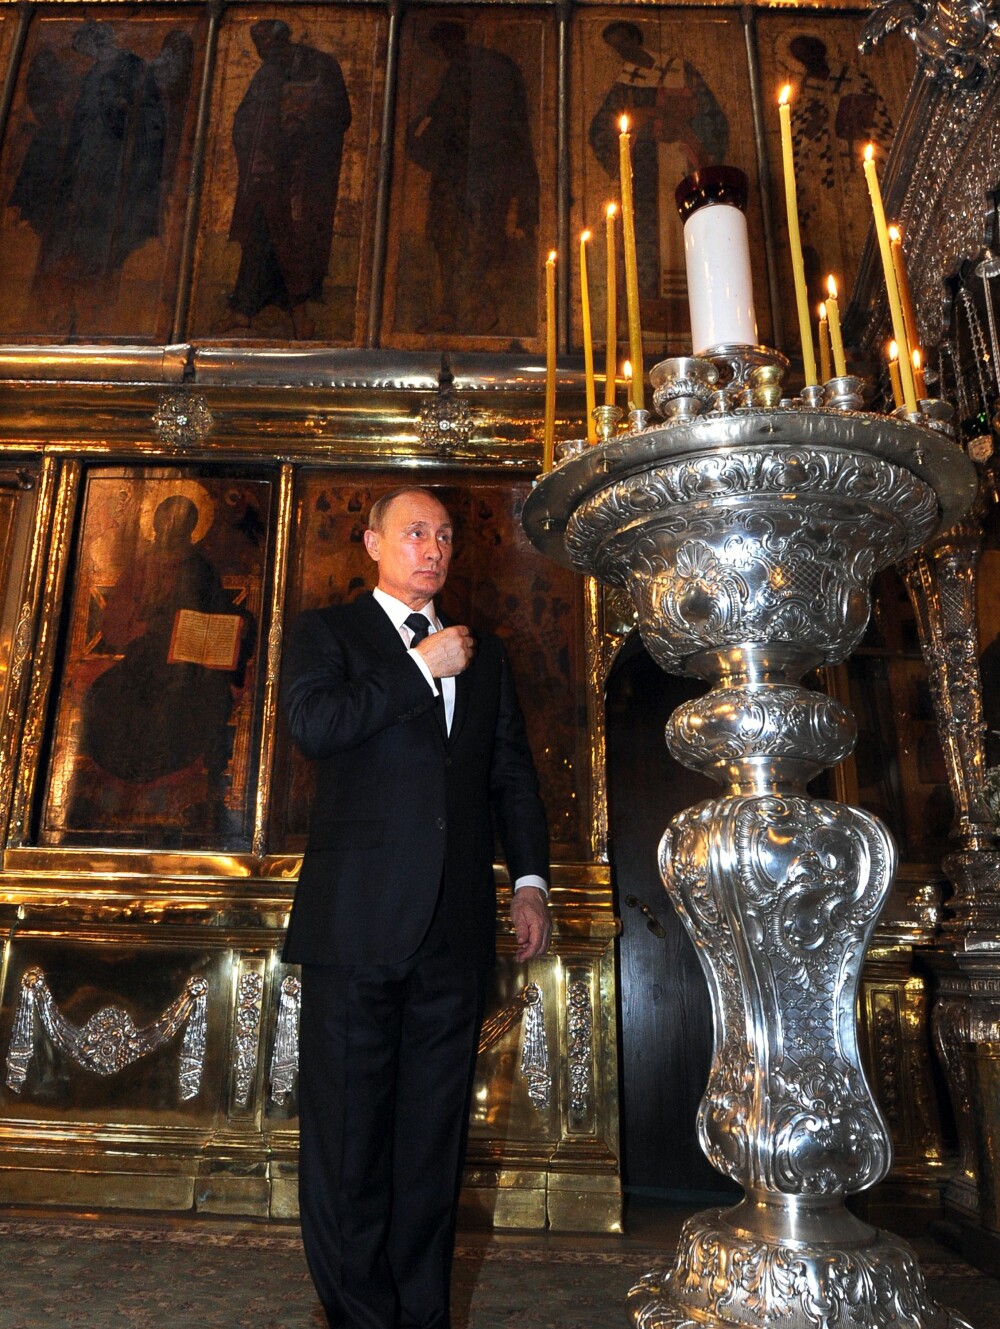 La cateva zile dupa tragedia din Ucraina, Putin s-a inchinat la biserica. Lideri mondiali: Nu se poate spala pe maini de vina - Imaginea 3